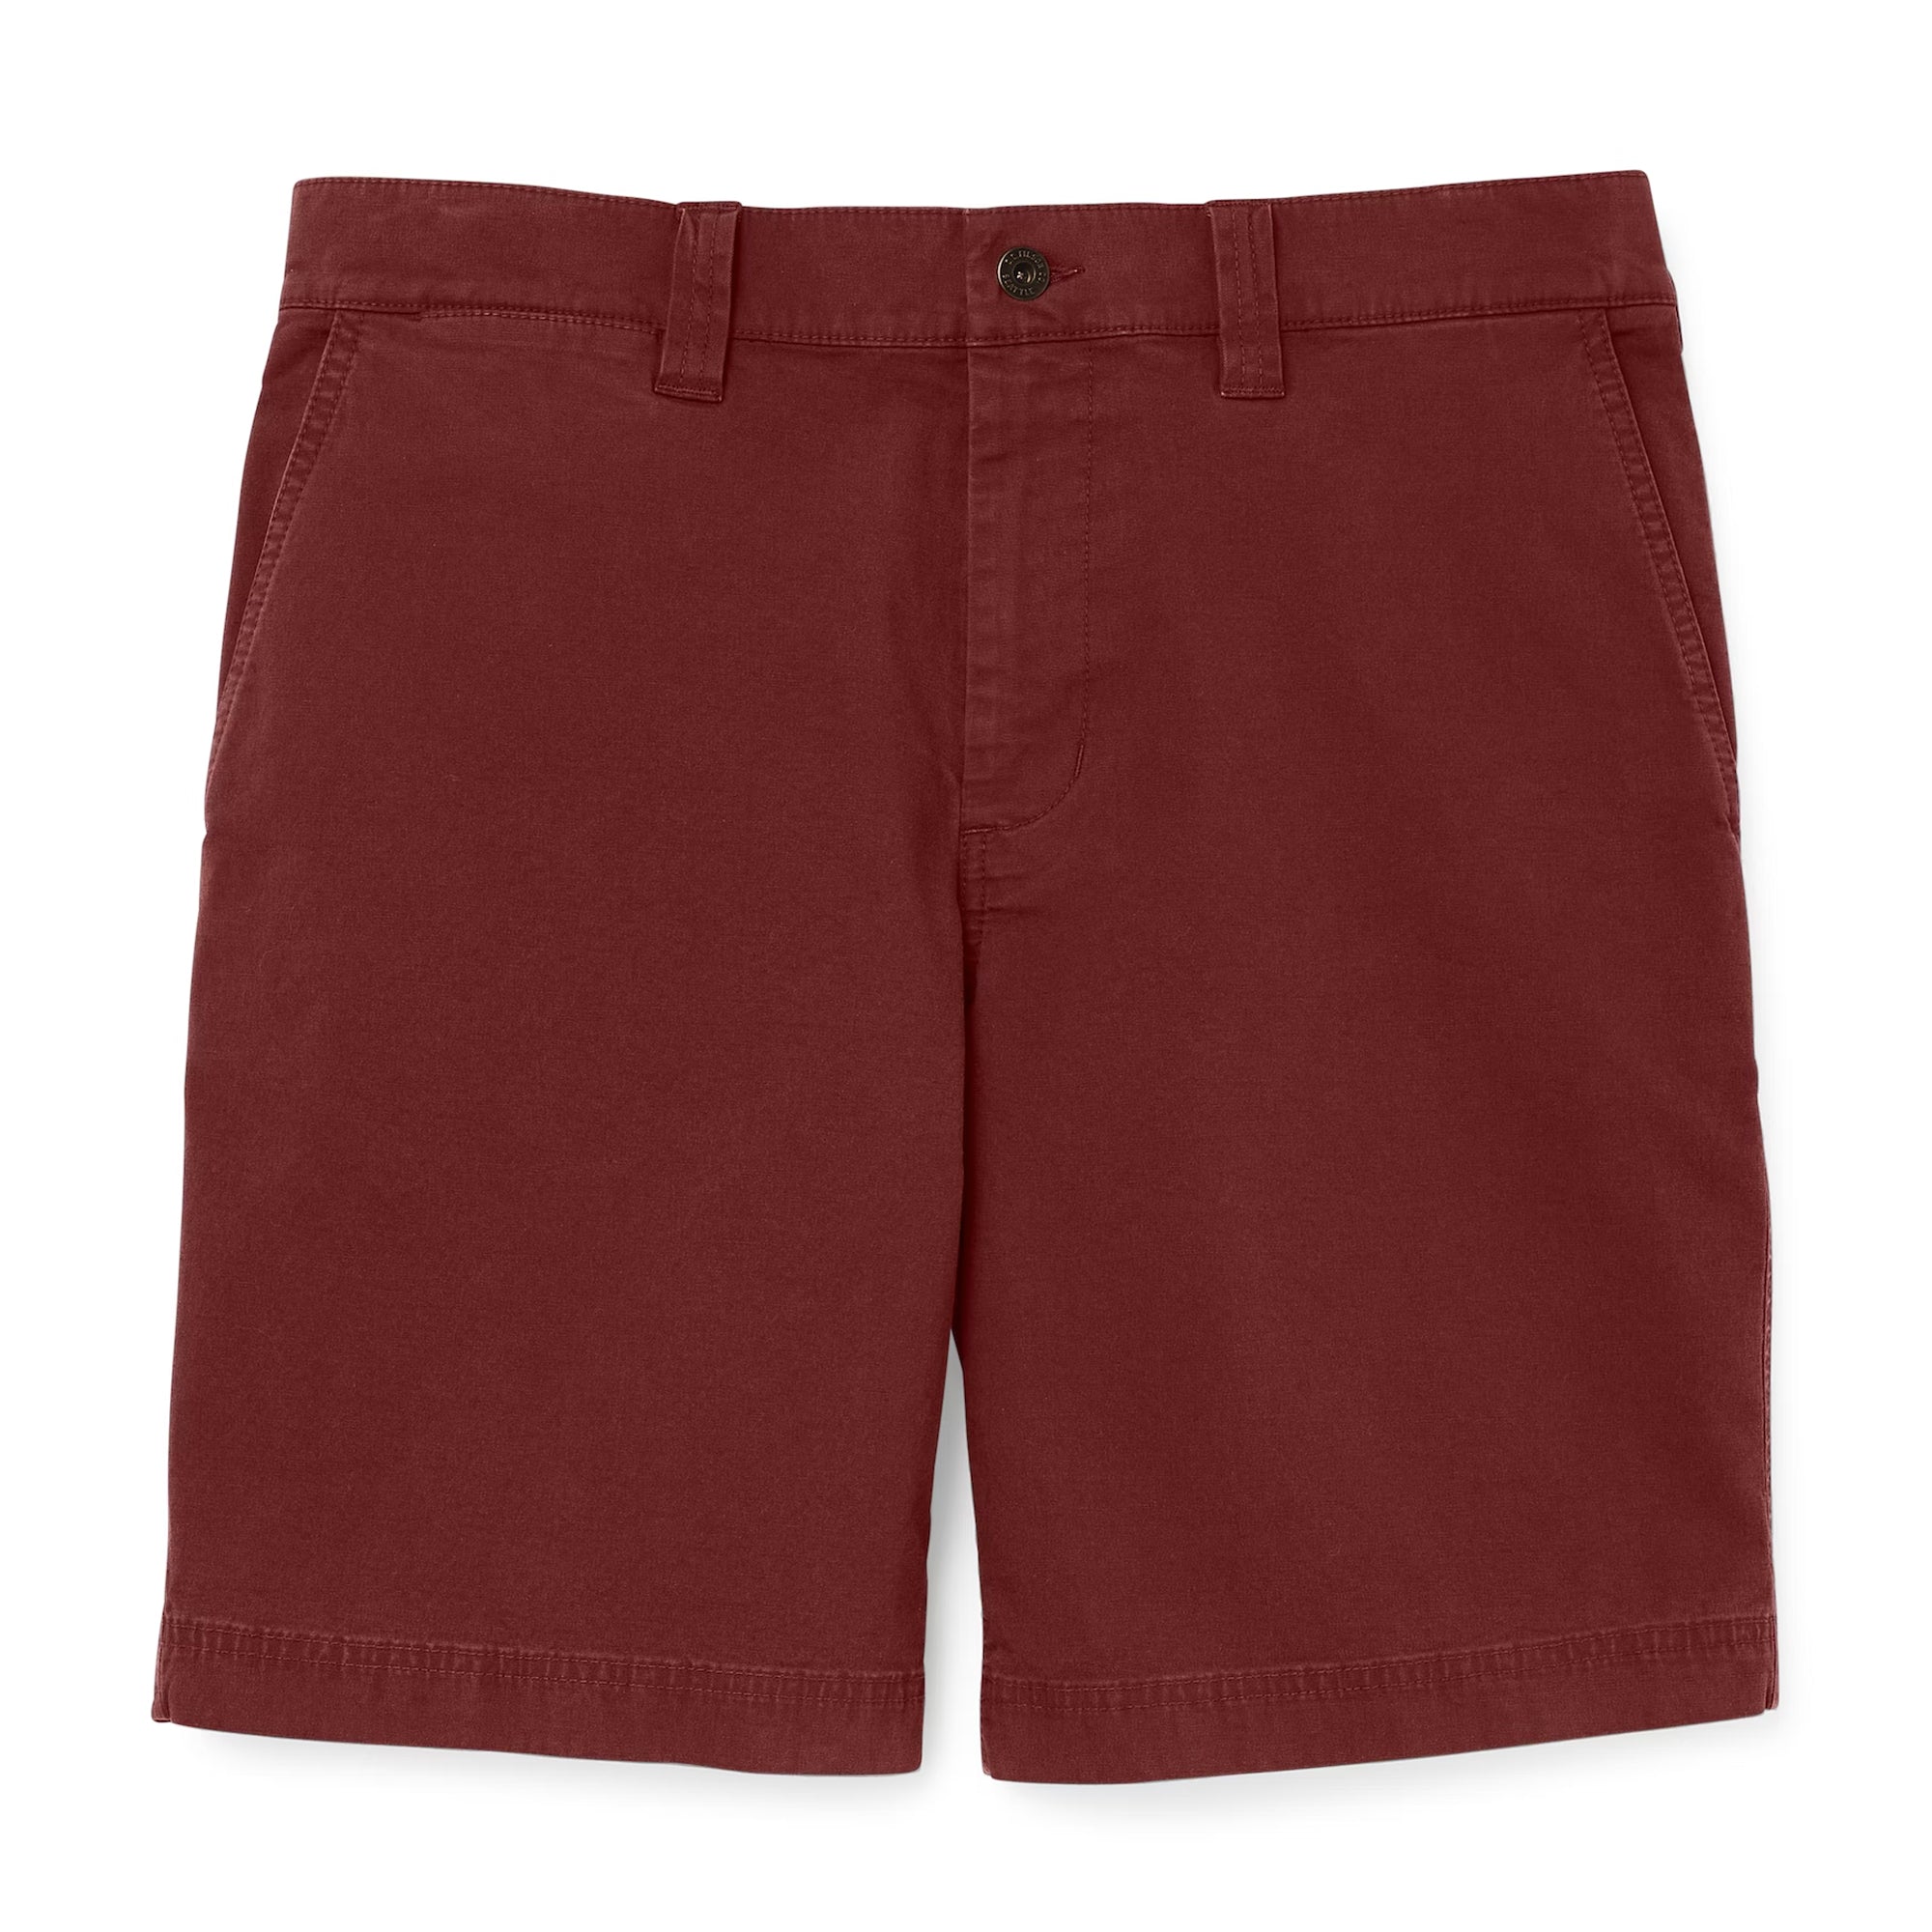 Filson Granite Mountain 9 Shorts, For Men, Red Shorts